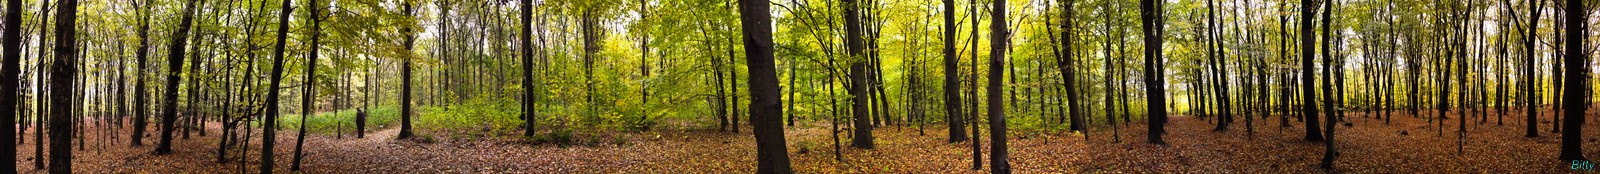 Erdő panorama1 Skov panorama, Dánia